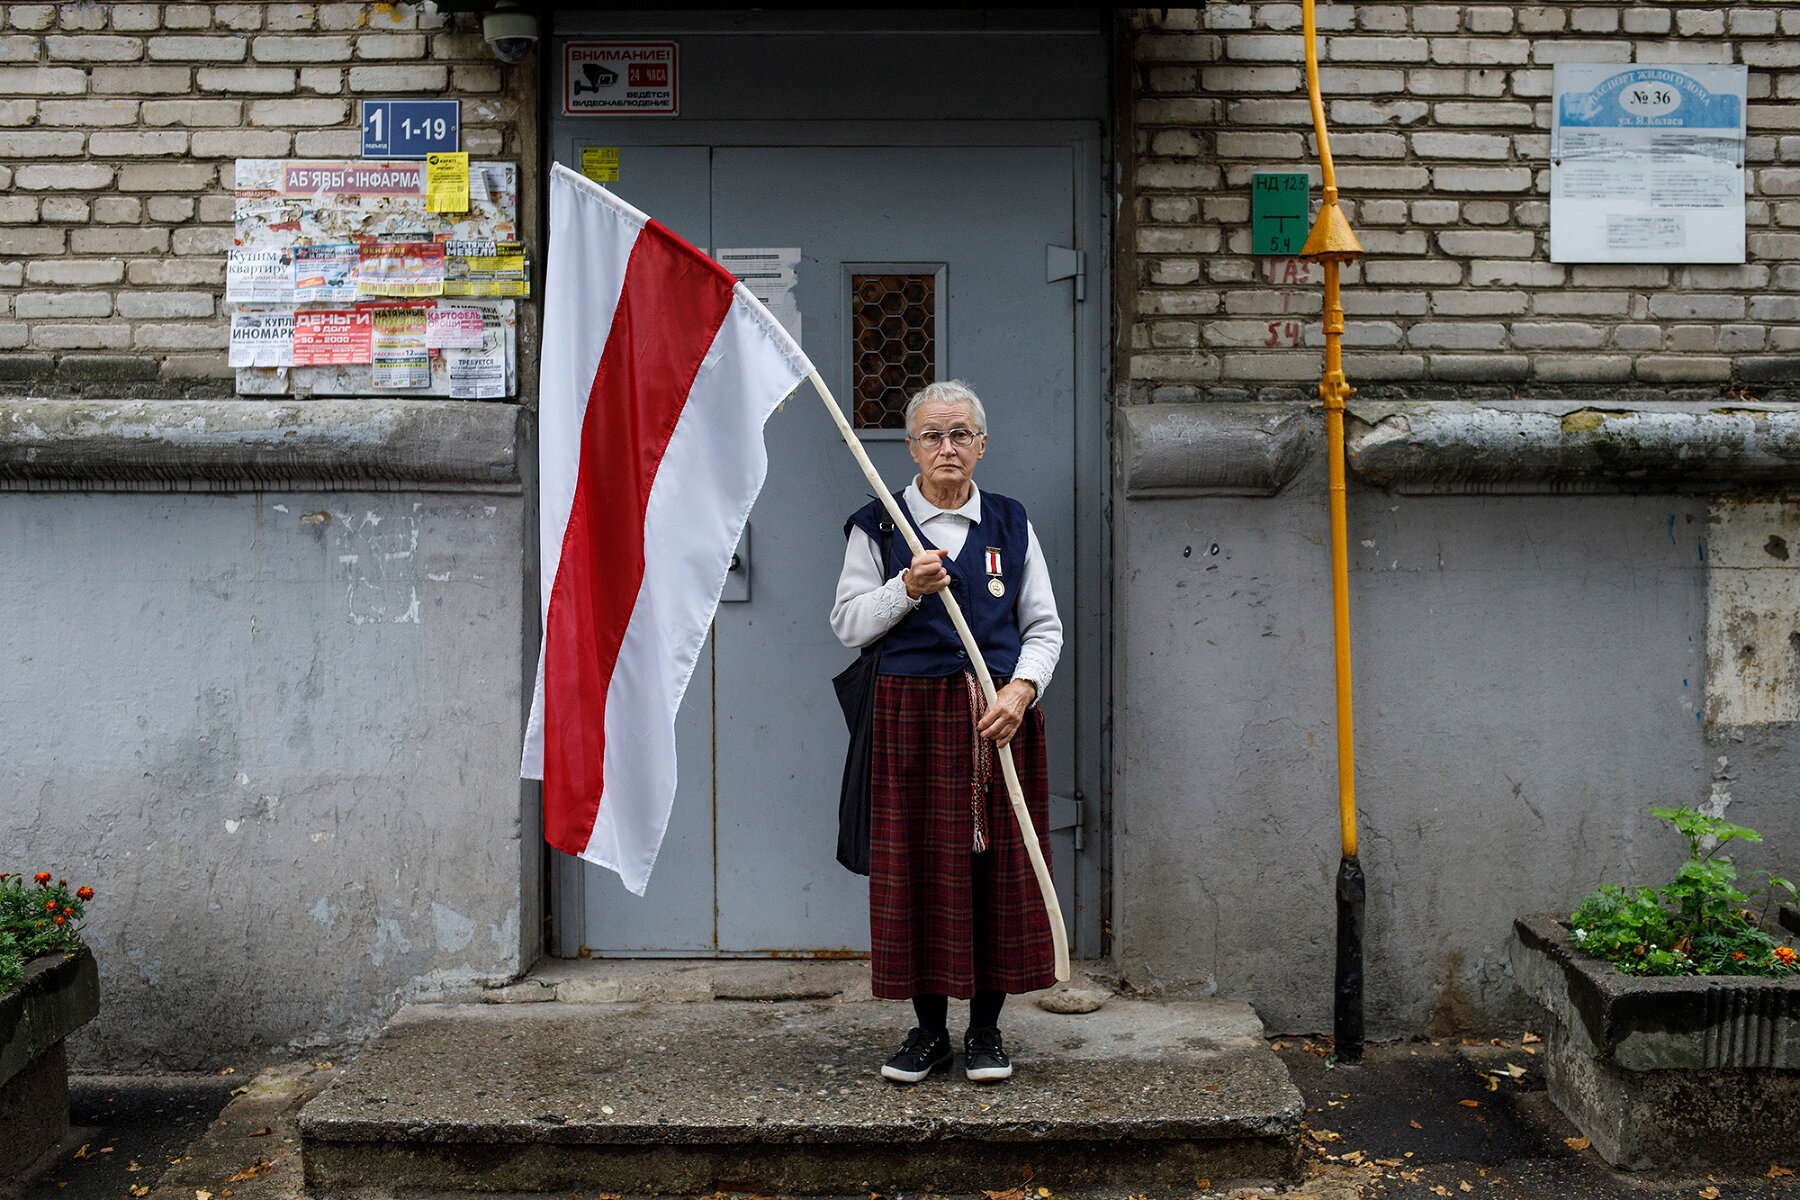 <p>Нина Багинская у подъезда своего дома перед акцией протеста, 10 сентября 2020 года.<br />
<br />
73-летняя Нина Багинская стала одним из символов белорусского протеста. Активистка получила широкую известность после видео, на котором она идет с бело-красно-белым флагом, ее пытается остановить силовик, а она говорит:&nbsp;&laquo;Я гуляю&raquo;. На самом деле она участвует в протестах с 1988 года. На протестах 2020 года ее неоднократно задерживали. Посмотреть ее интервью Дождю можно <a href="https://www.youtube.com/watch?v=6Icq3lUeh-k" target="_blank">здесь</a>.&nbsp;&nbsp;</p>